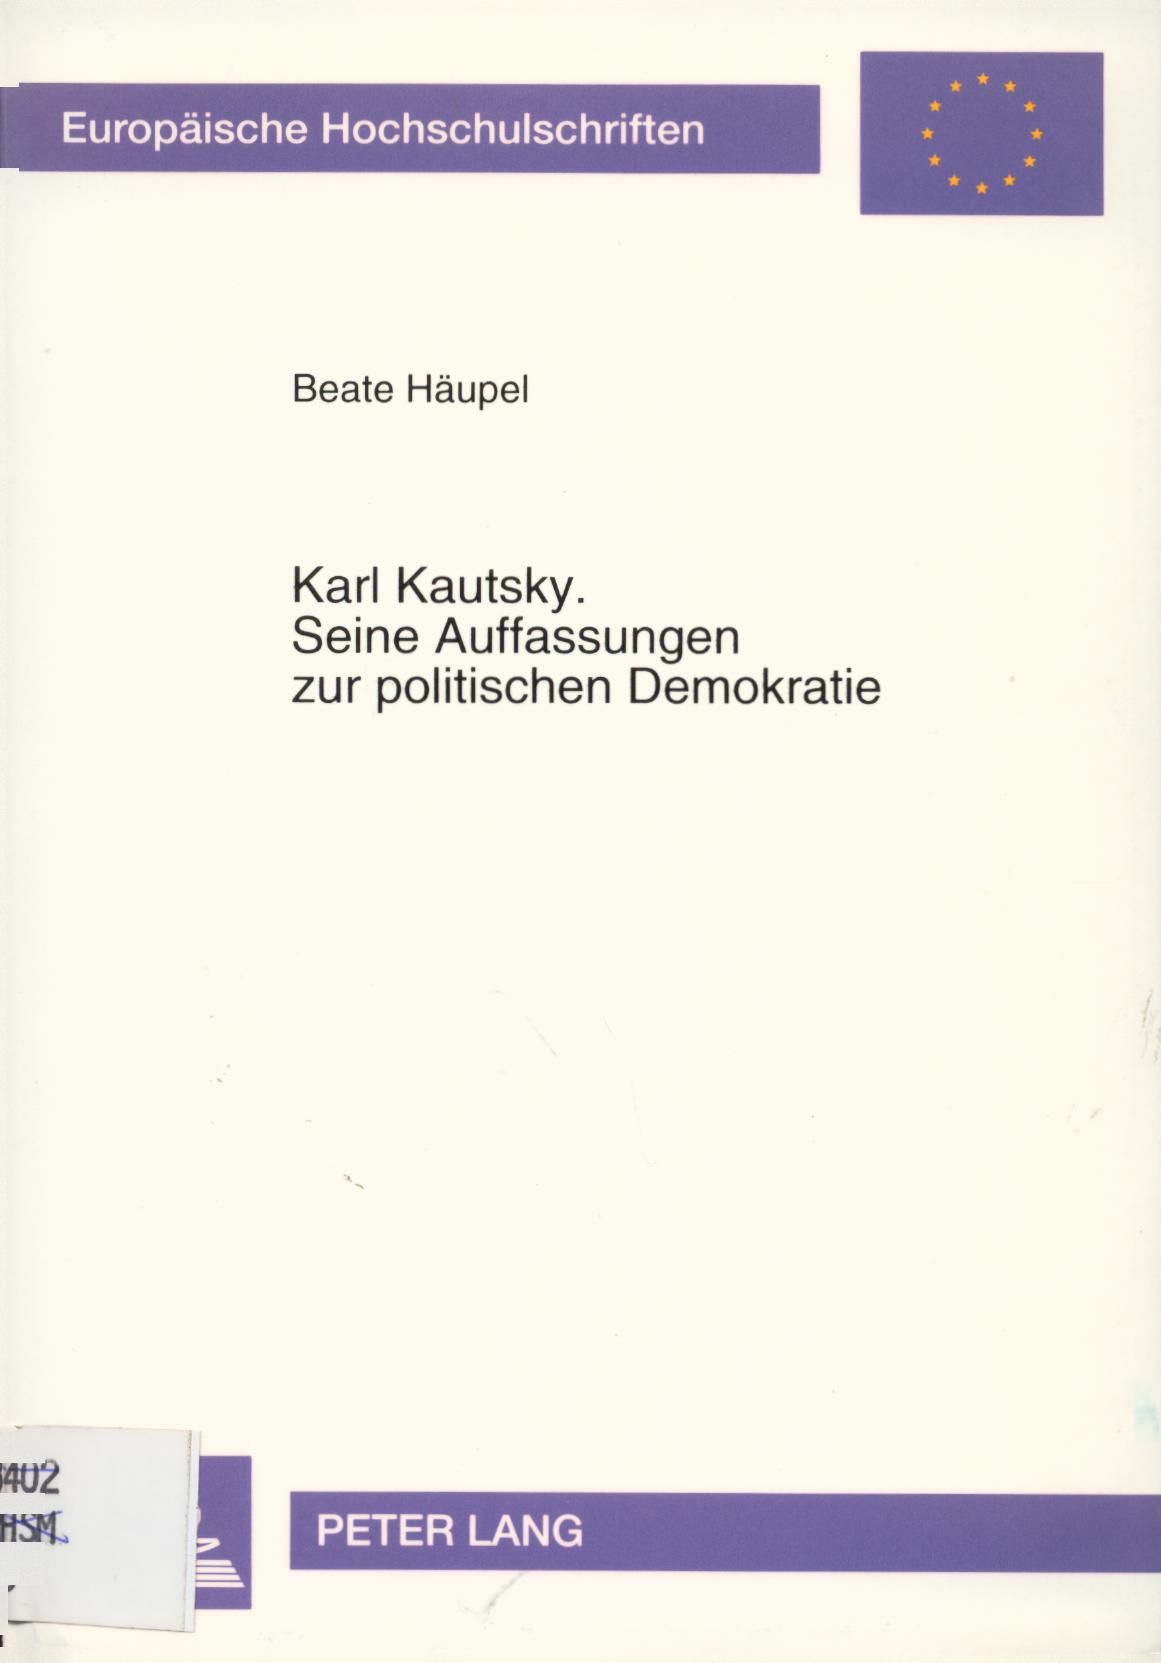 Karl Kautsky. Seine Auffassungen zur politischen Demokratie Eine ideengeschichtliche Betrachtung unter besonderer Berücksichtigung seines Modells der politischen Institutionen - Häupel, Beate